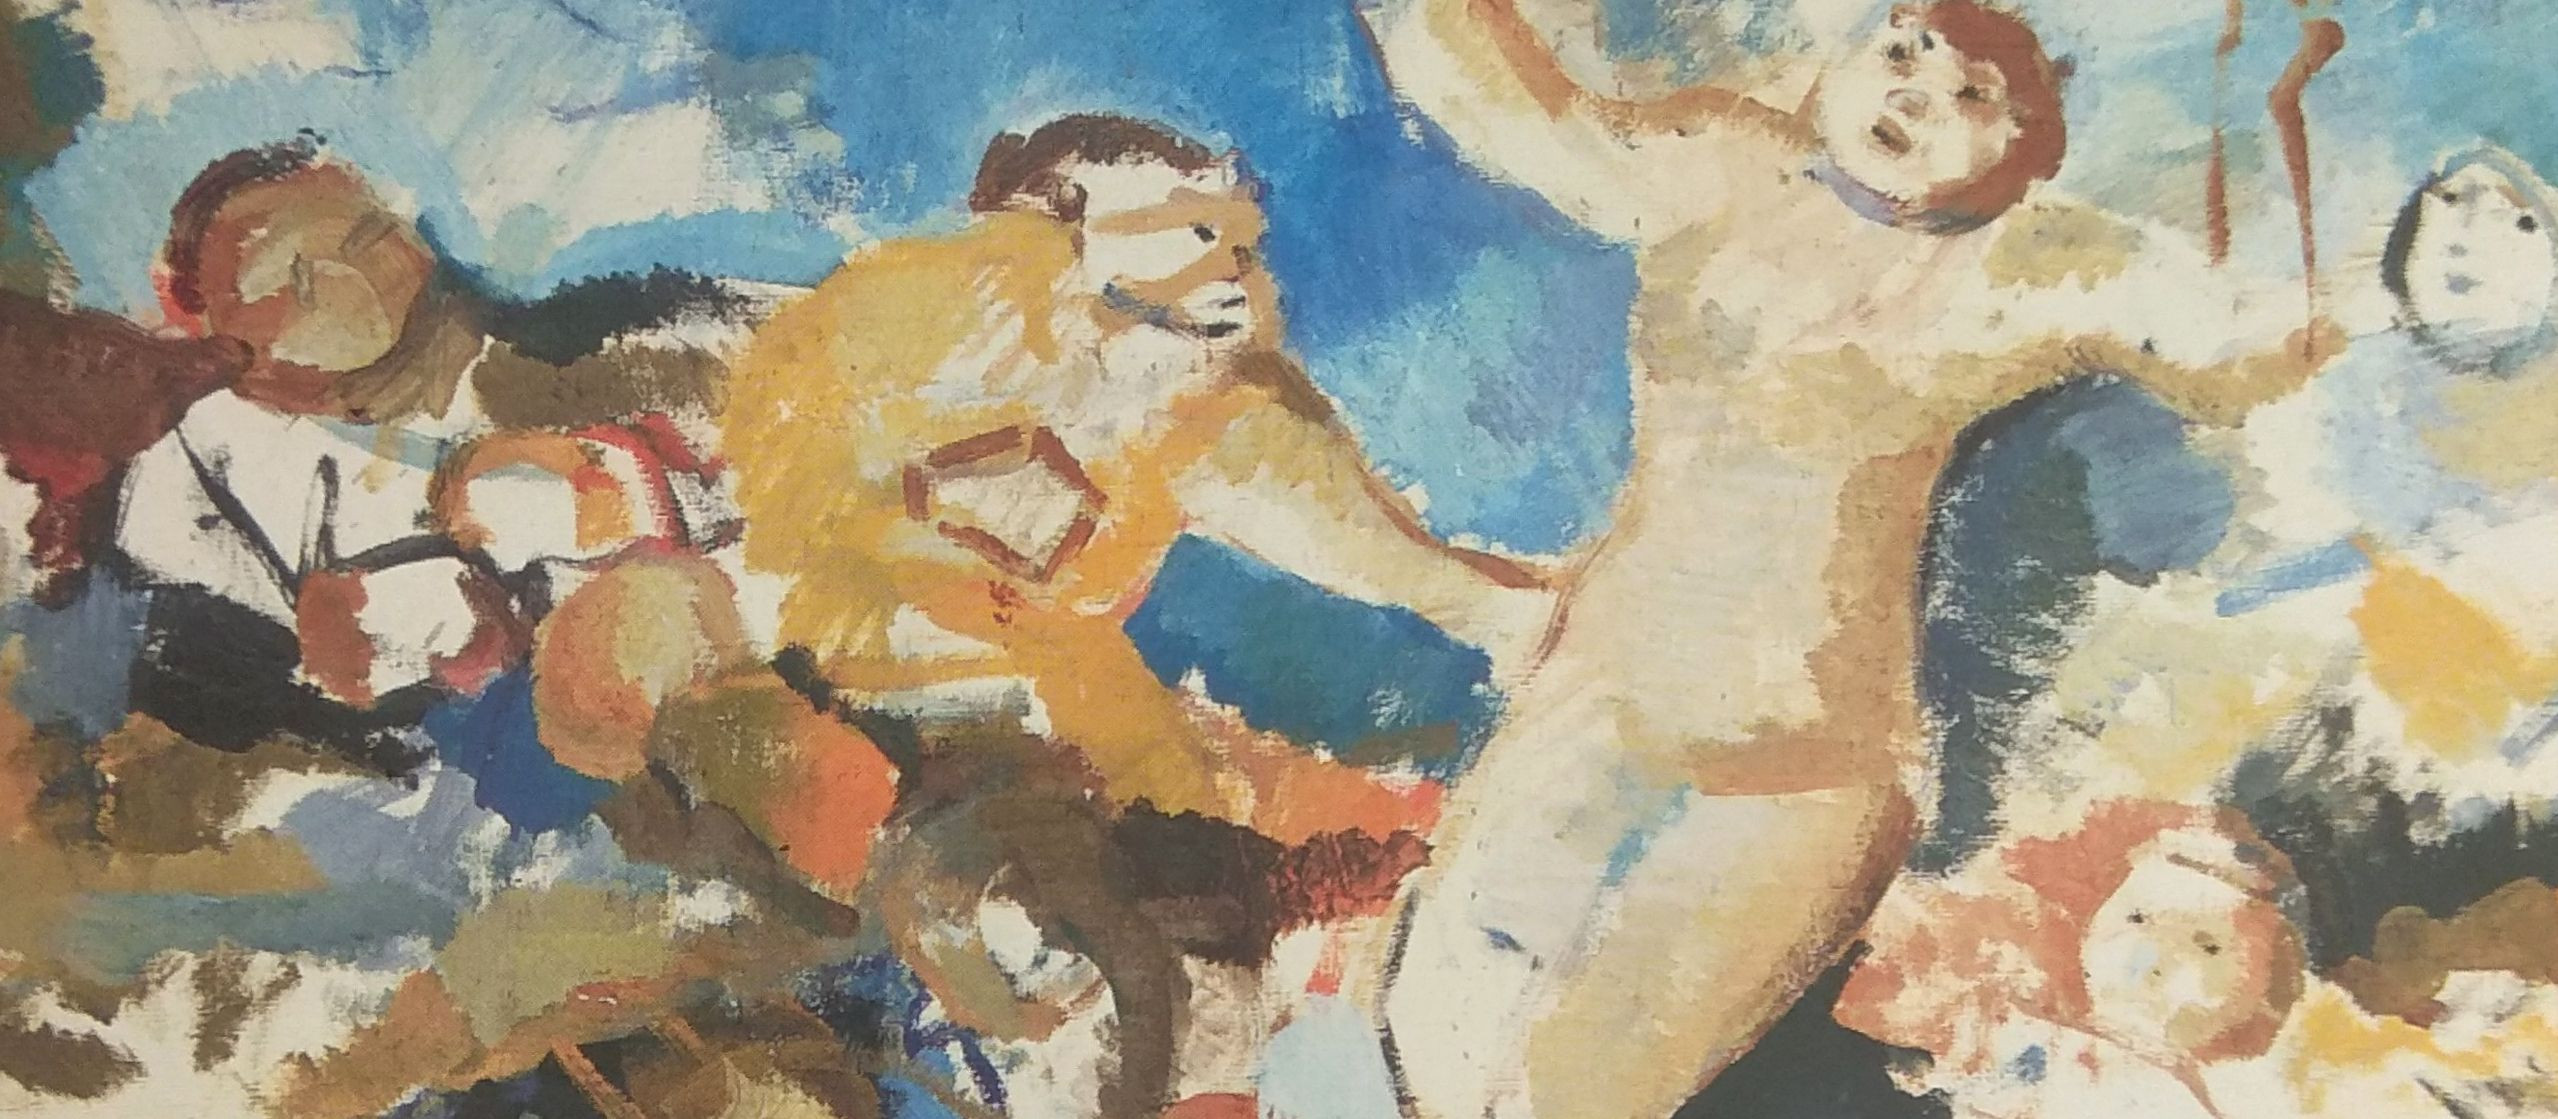 Статья А.В. Бакушинского «Выставка произведений В.Н. Чекрыгина» в журнале «Русское искусство» как основа для искусствоведческого осмысления